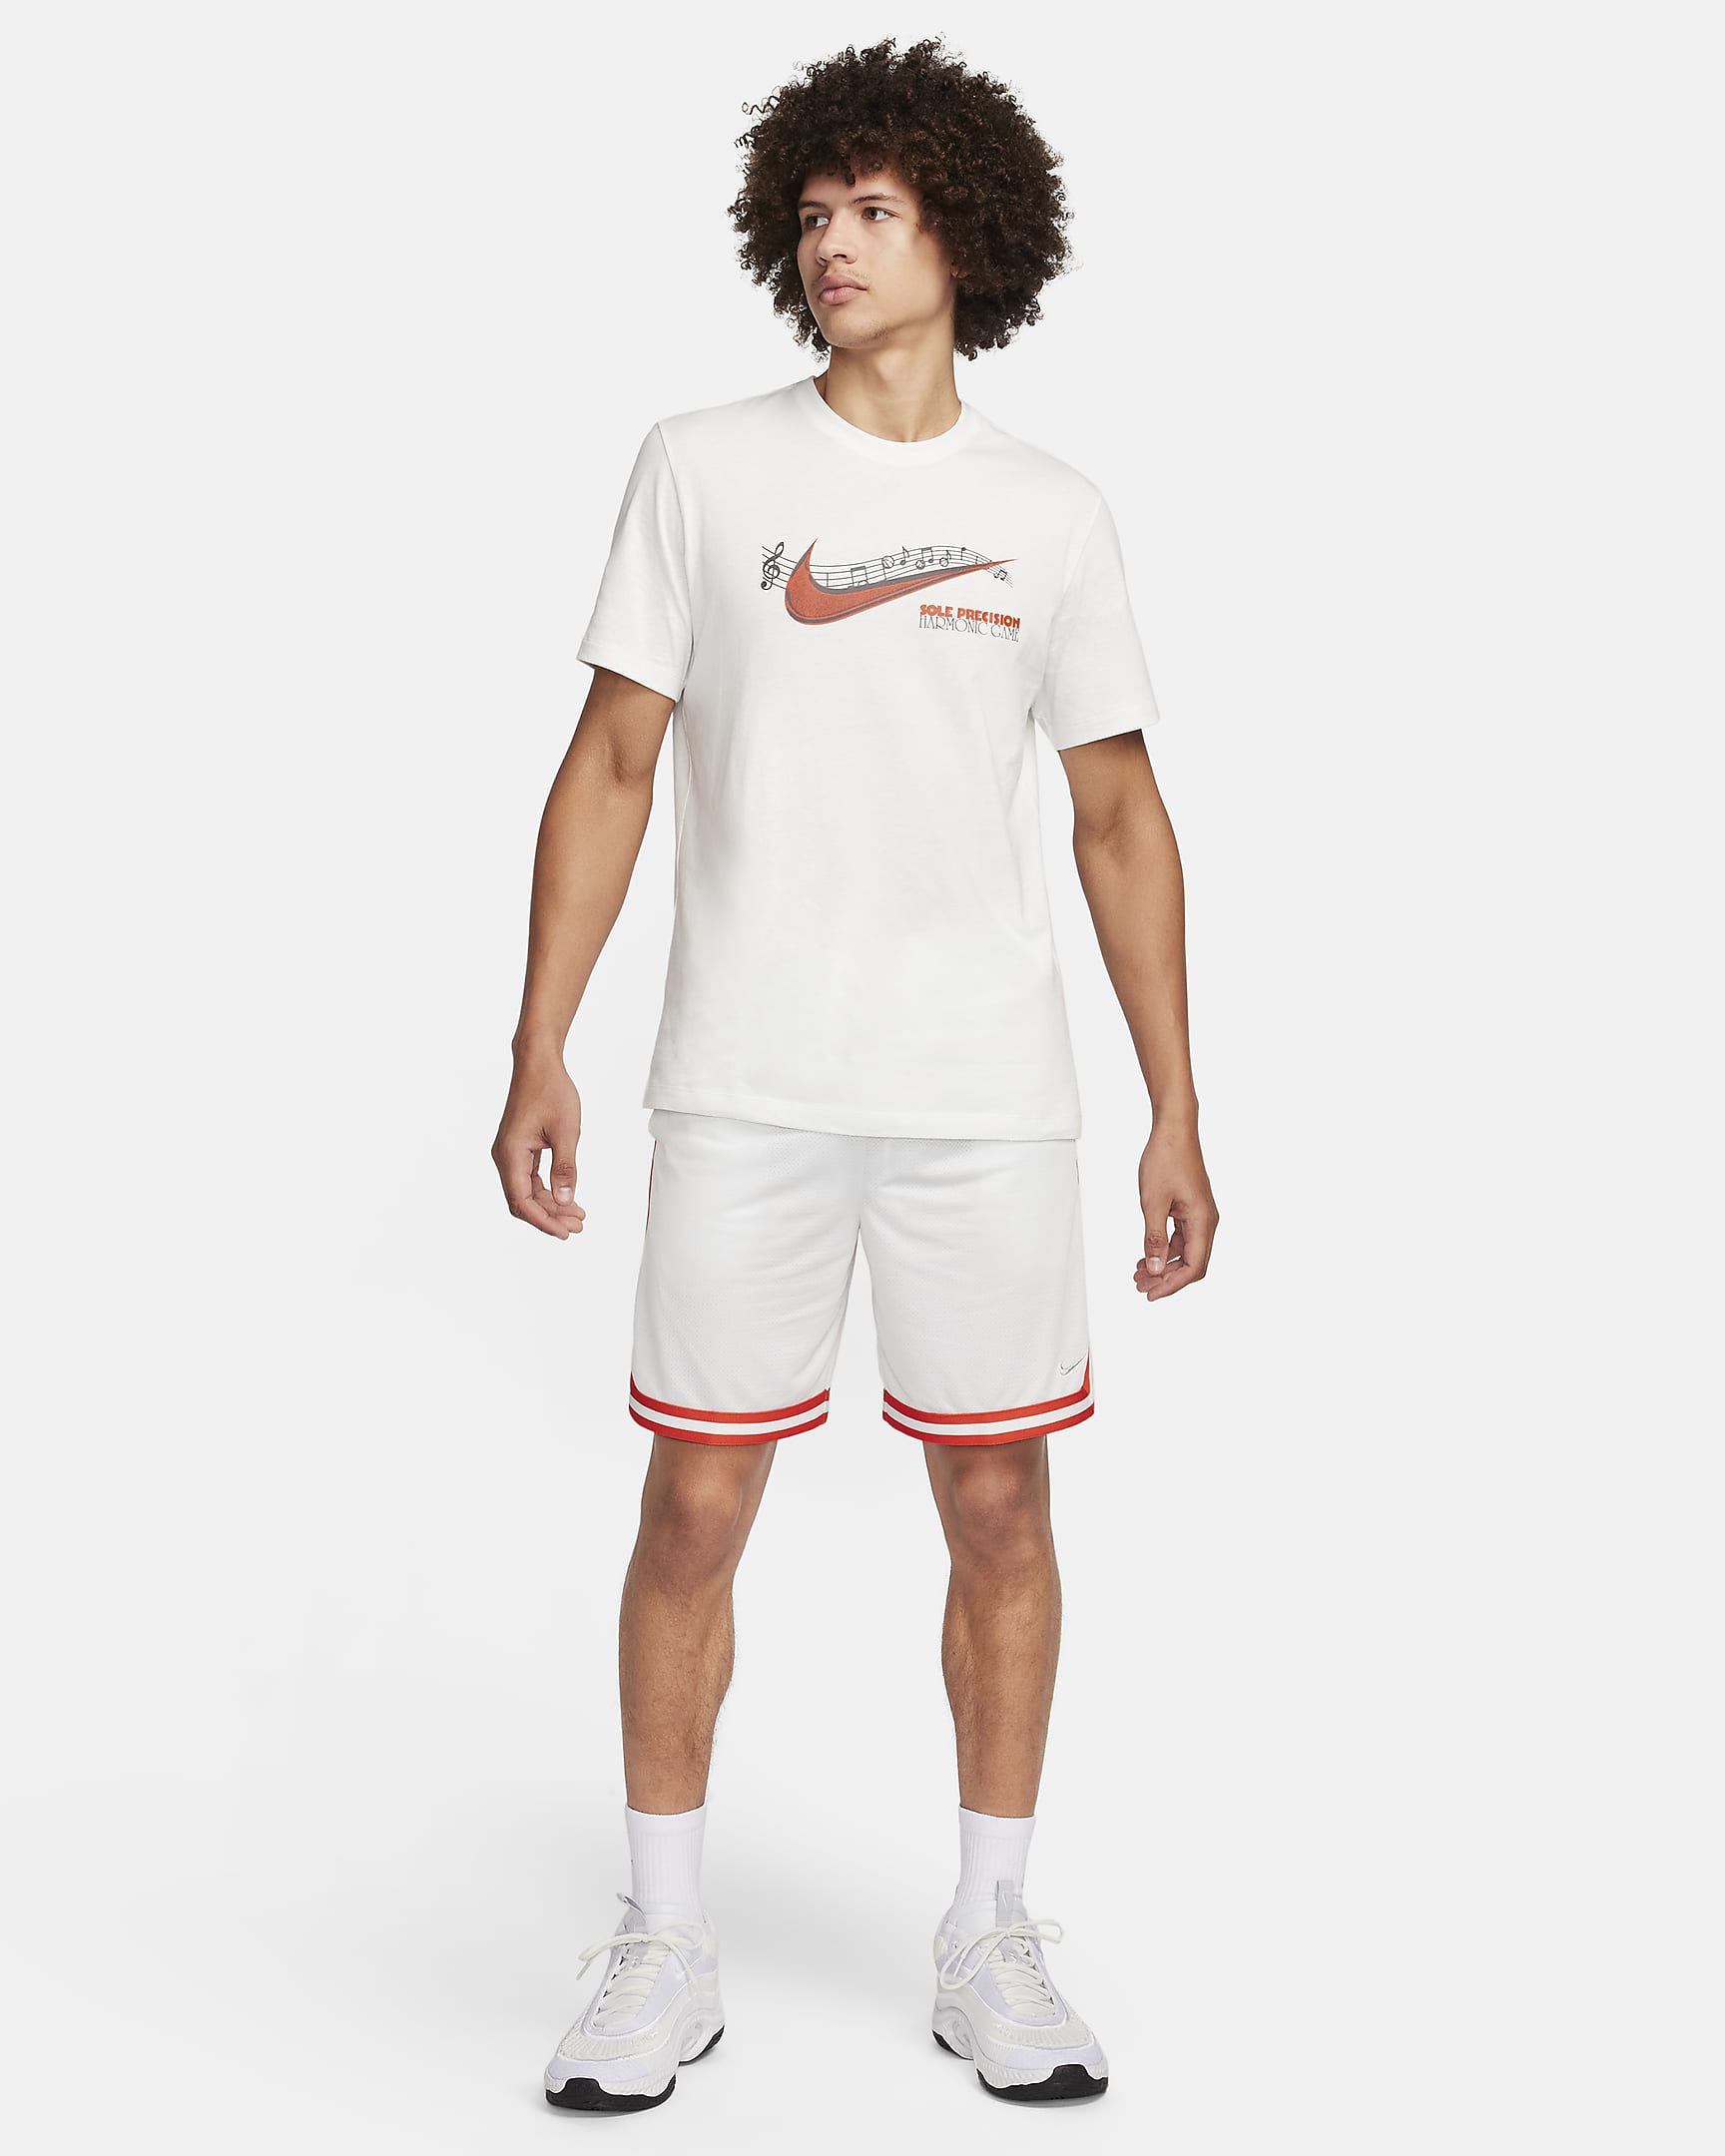 Nike Men's Basketball T-Shirt. Nike HU